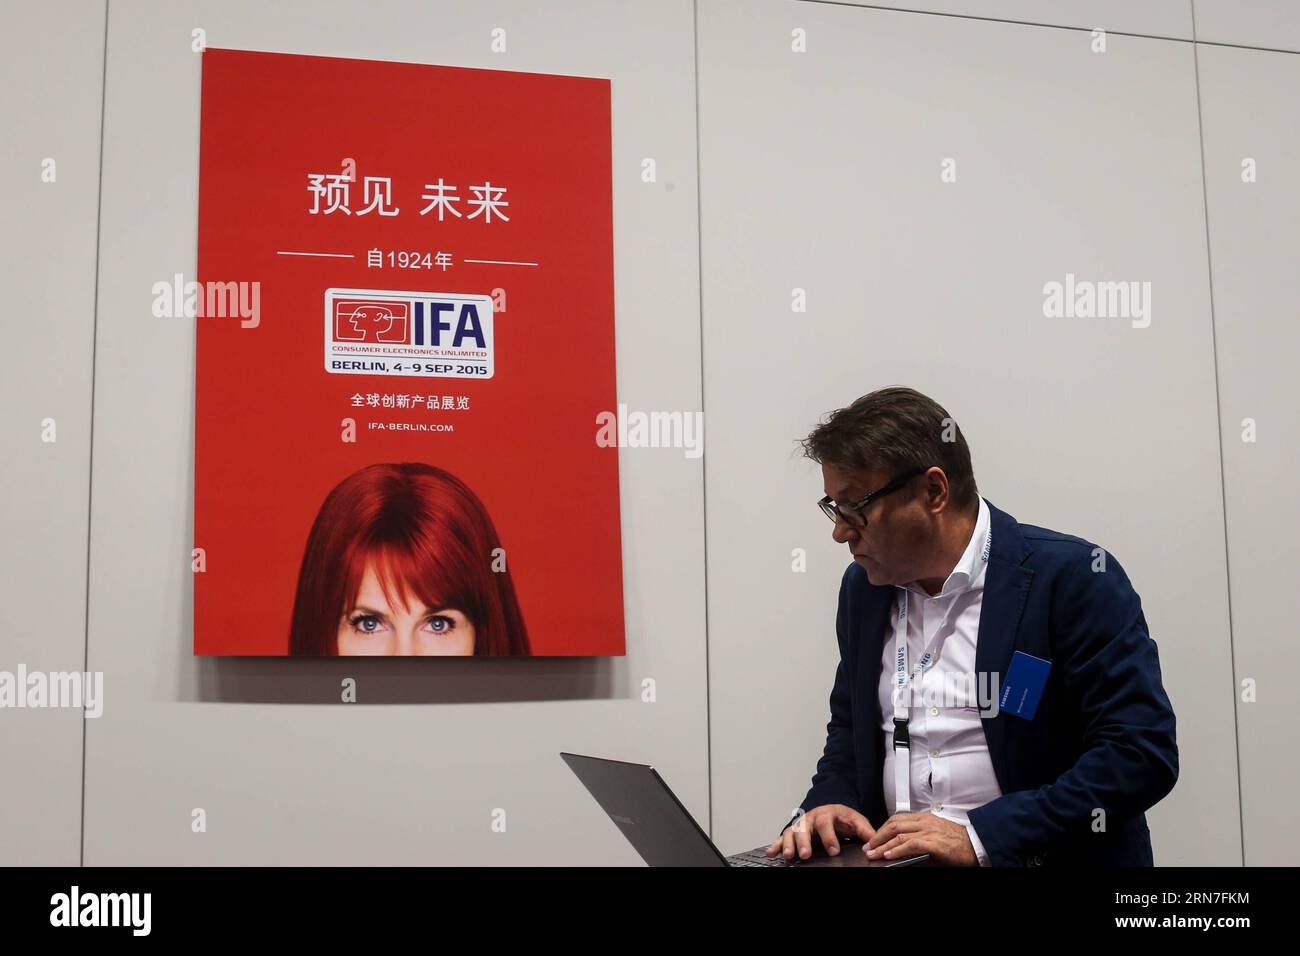 (150904) -- BERLIN, 4 septembre 2015 -- Un visiteur travaille sur son ordinateur portable au 55e salon IFA de l'électronique grand public à Berlin, Allemagne, le 4 septembre 2015. Alors que le 55e salon IFA de l électronique grand public, le plus grand salon européen de l électronique grand public et de l électroménager, a débuté vendredi à Berlin, China Brand Show a également tenu sa première cérémonie d ouverture à l IFA. ALLEMAGNE-BERLIN-IFA SALON DE L'ÉLECTRONIQUE GRAND PUBLIC ZhangxFan PUBLICATIONxNOTxINxCHN 150904 Berlin sept 4 2015 un visiteur travaille SUR son ordinateur portable À la 55e IFA Consumer Electronics Fair à Berlin Allemagne LE 4 2015 septembre en tant que 55e IFA Consumer Electronics FAI Banque D'Images